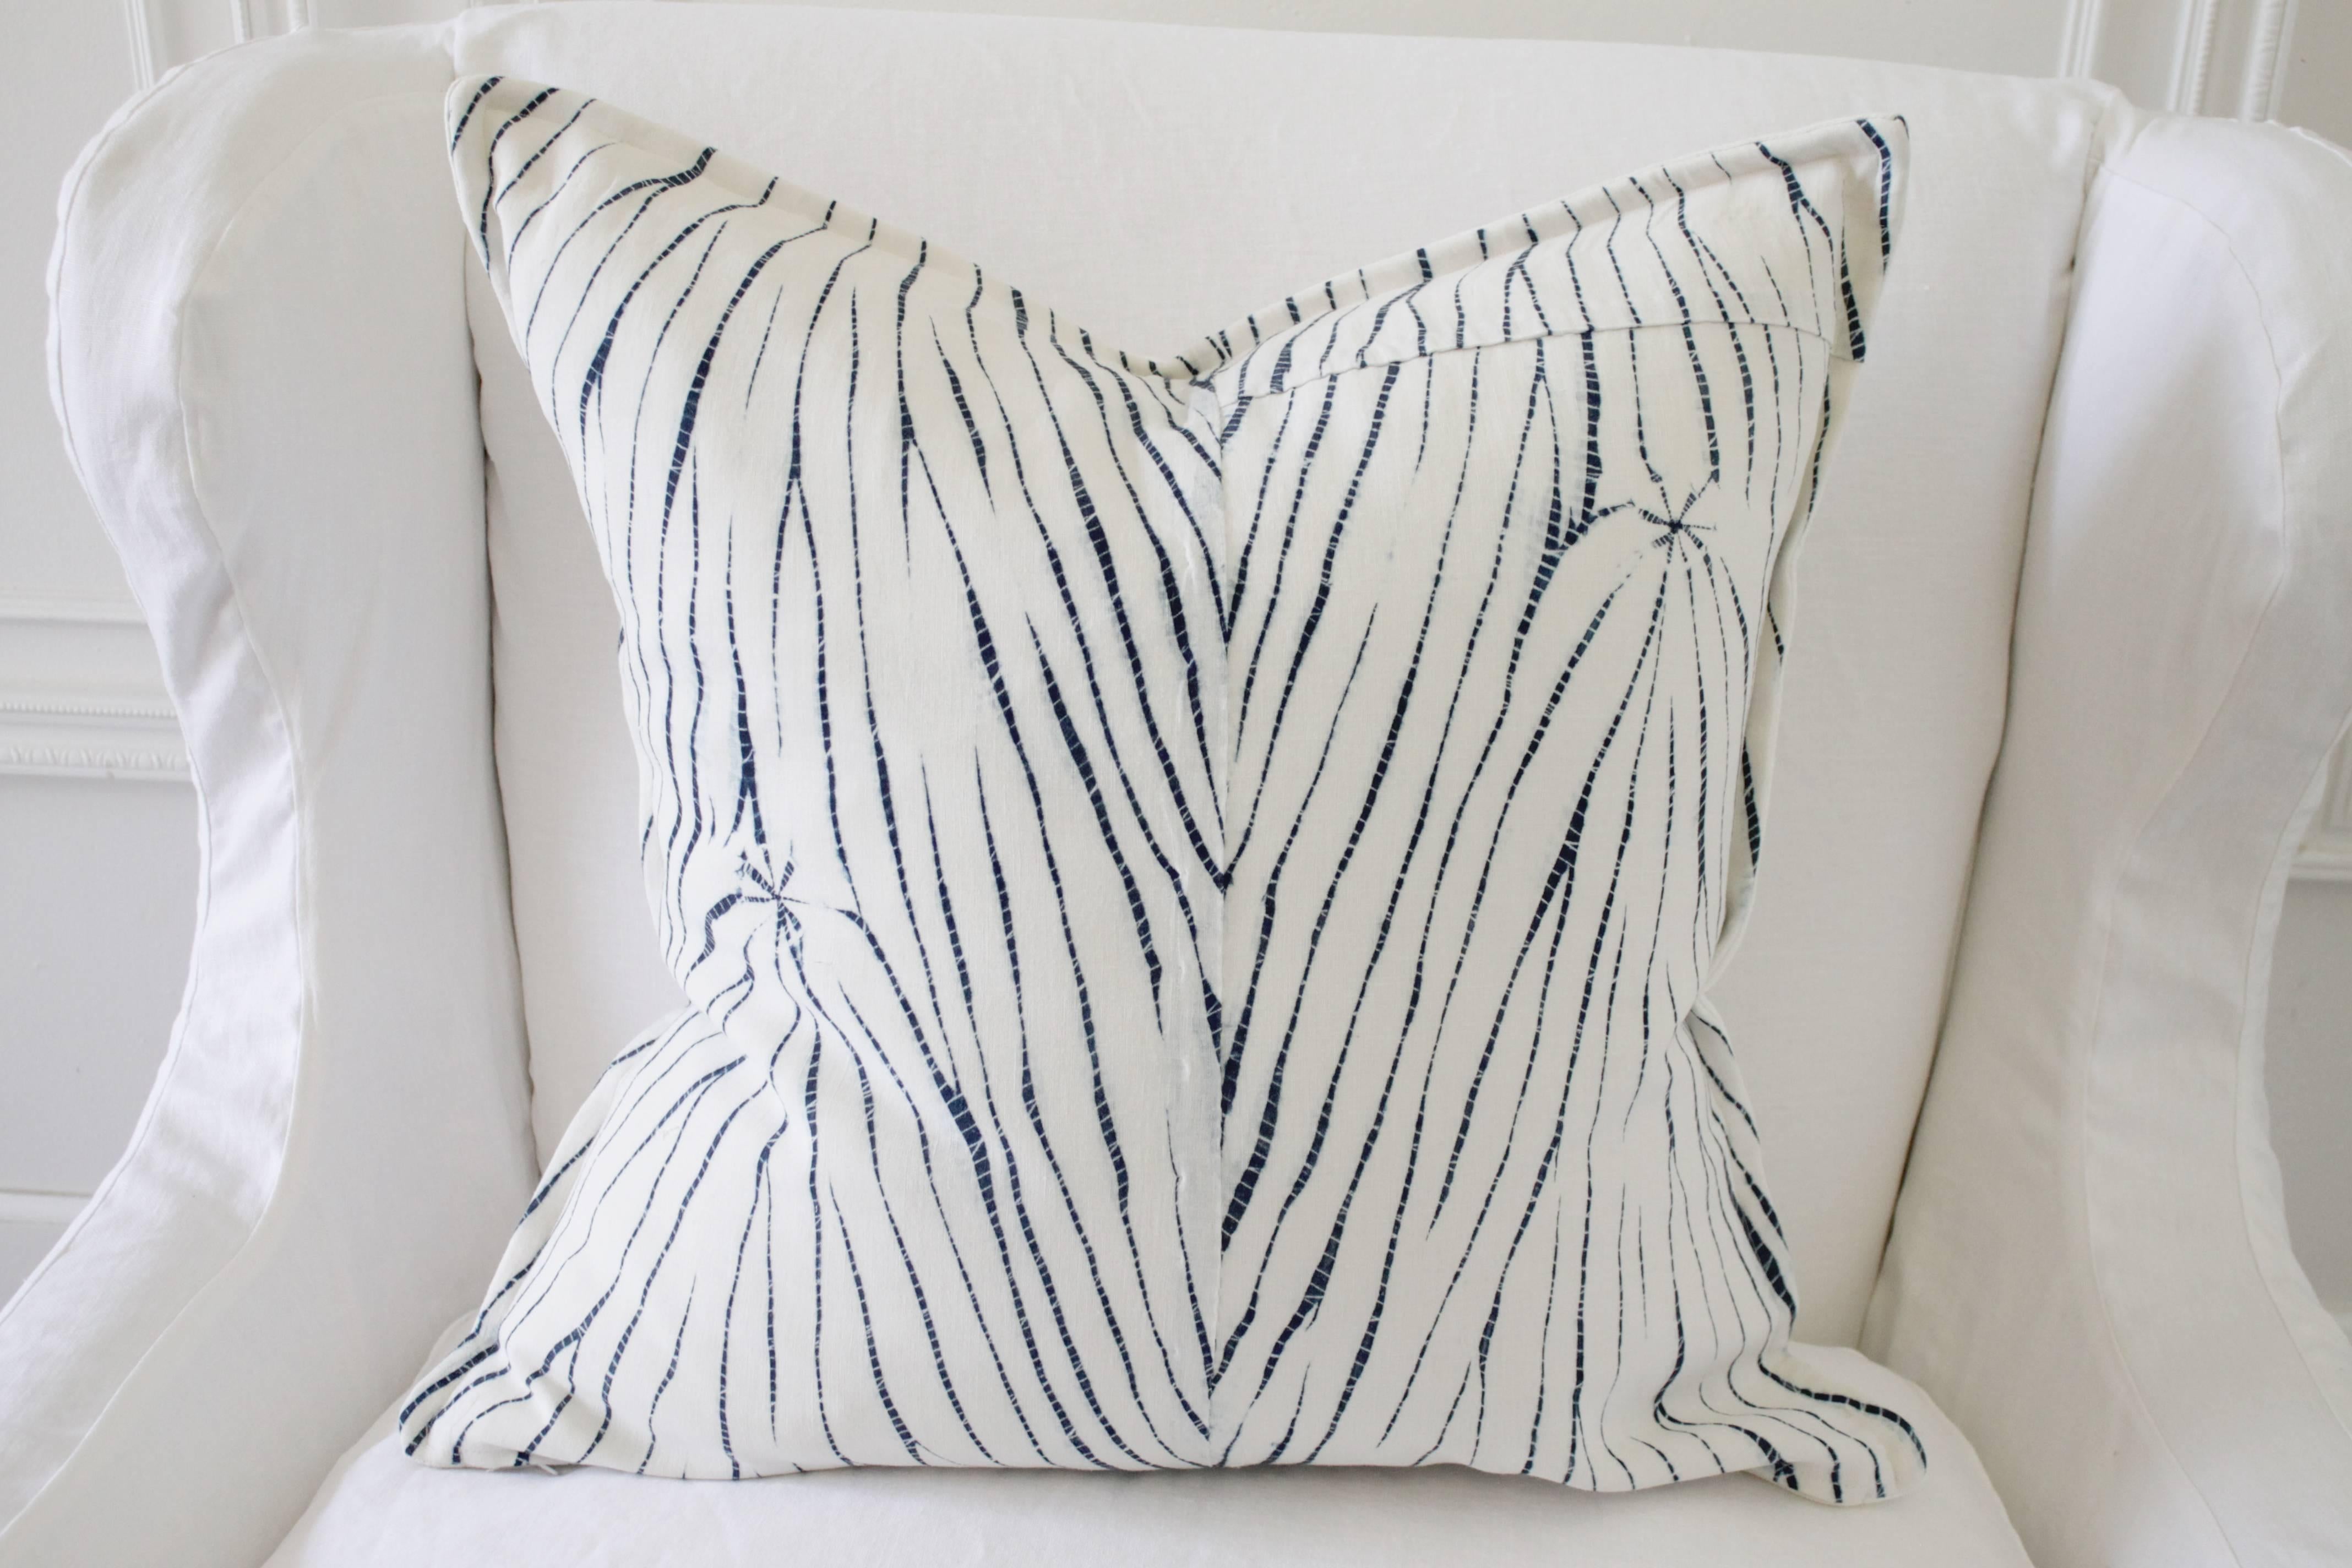 20th Century Vintage Shibori Dyed Textile Pillow with White Linen